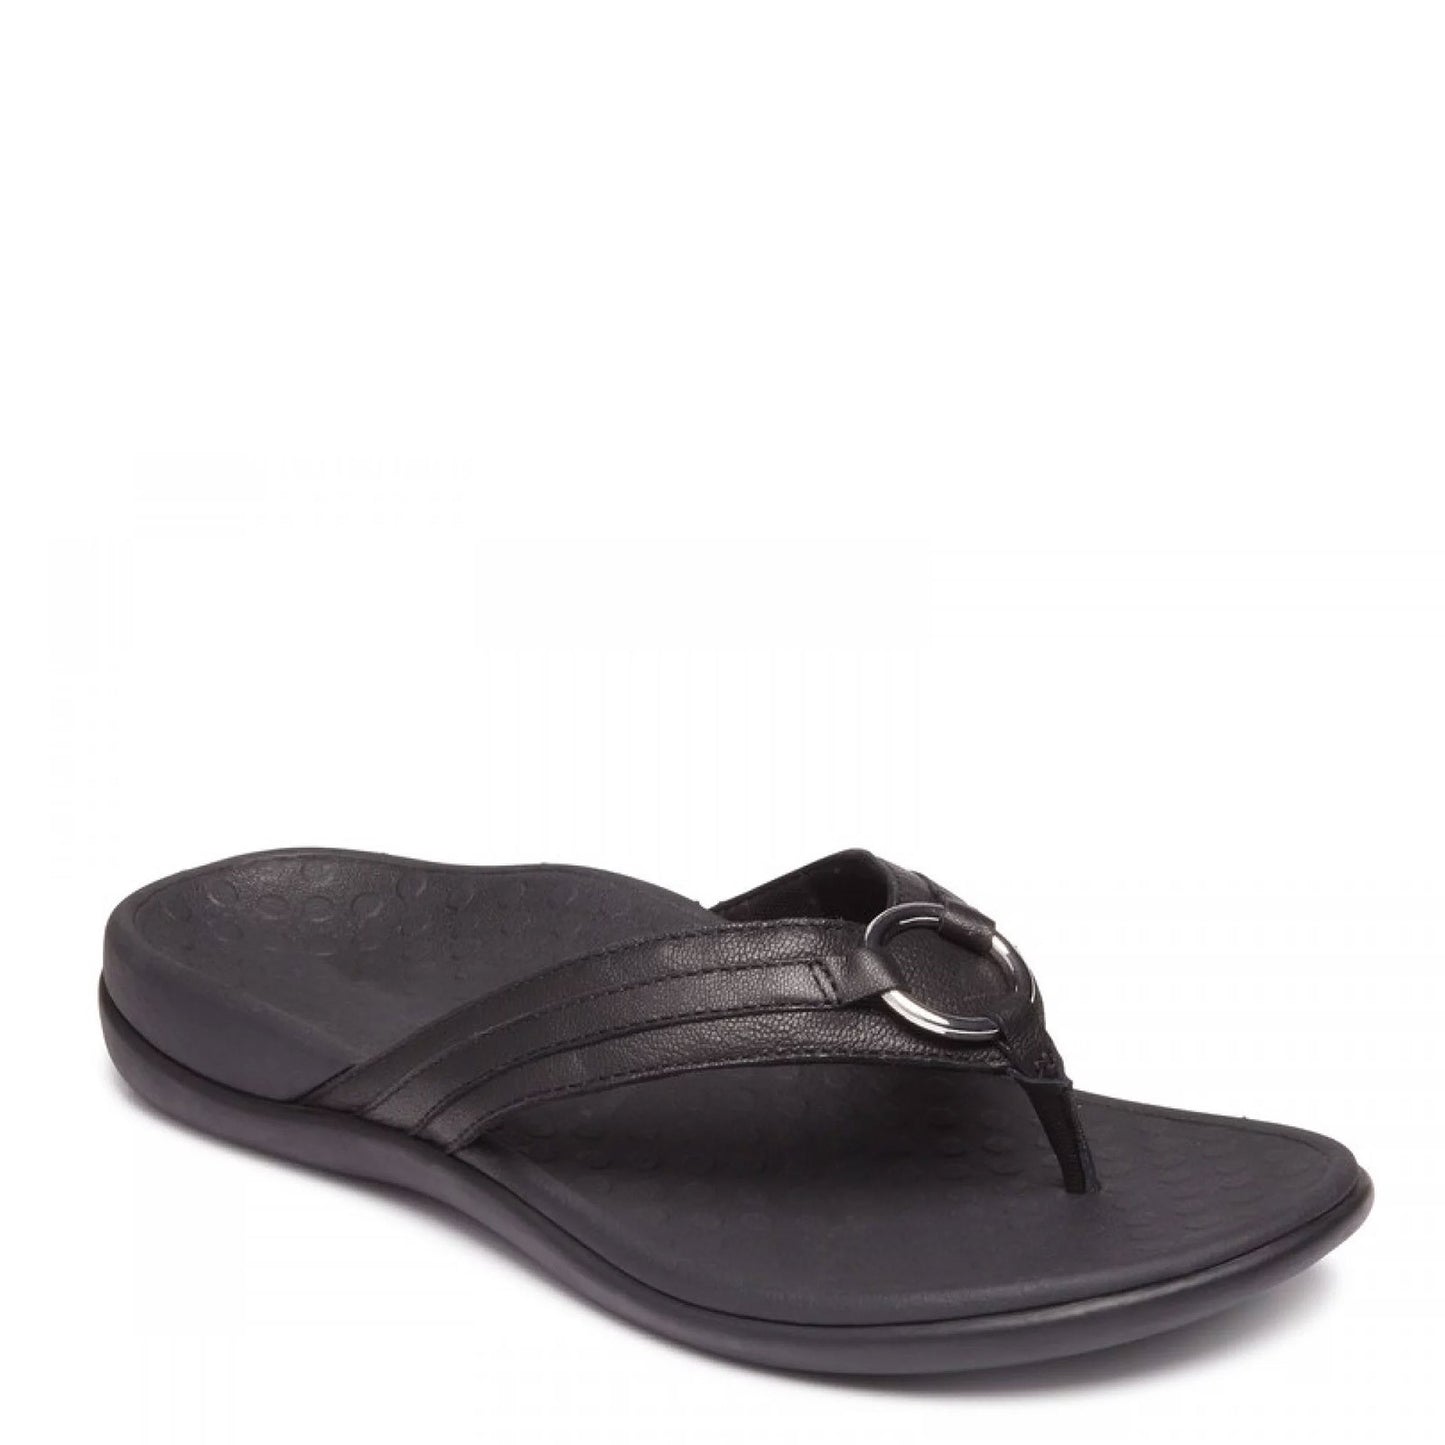 Peltz Shoes  Women's Vionic Tide Aloe Sandal BLACK LEATHER 10010887-BLK